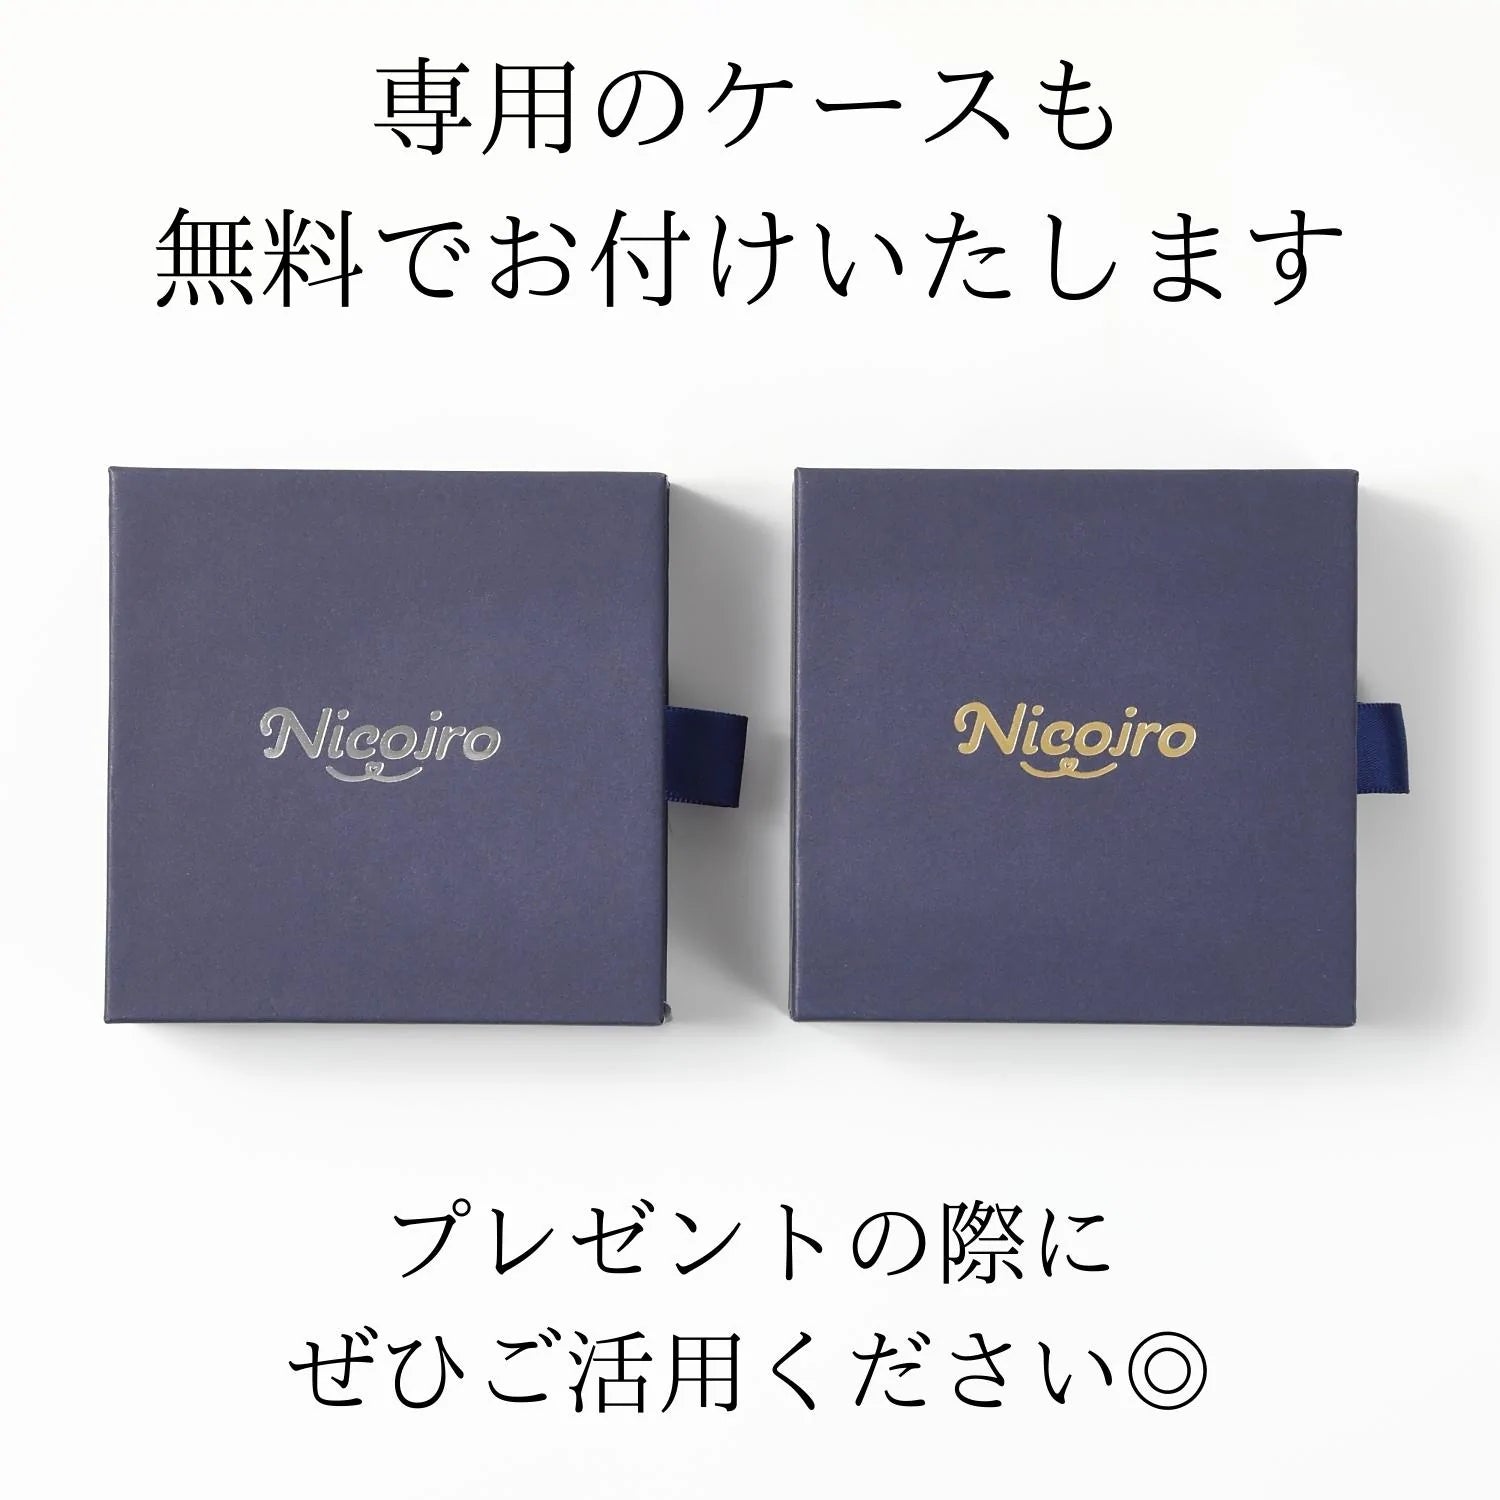 ペアネックレス トリプルリング S925製【NSPN20】  ネックレス Nicoiro Official Store ペアルック.